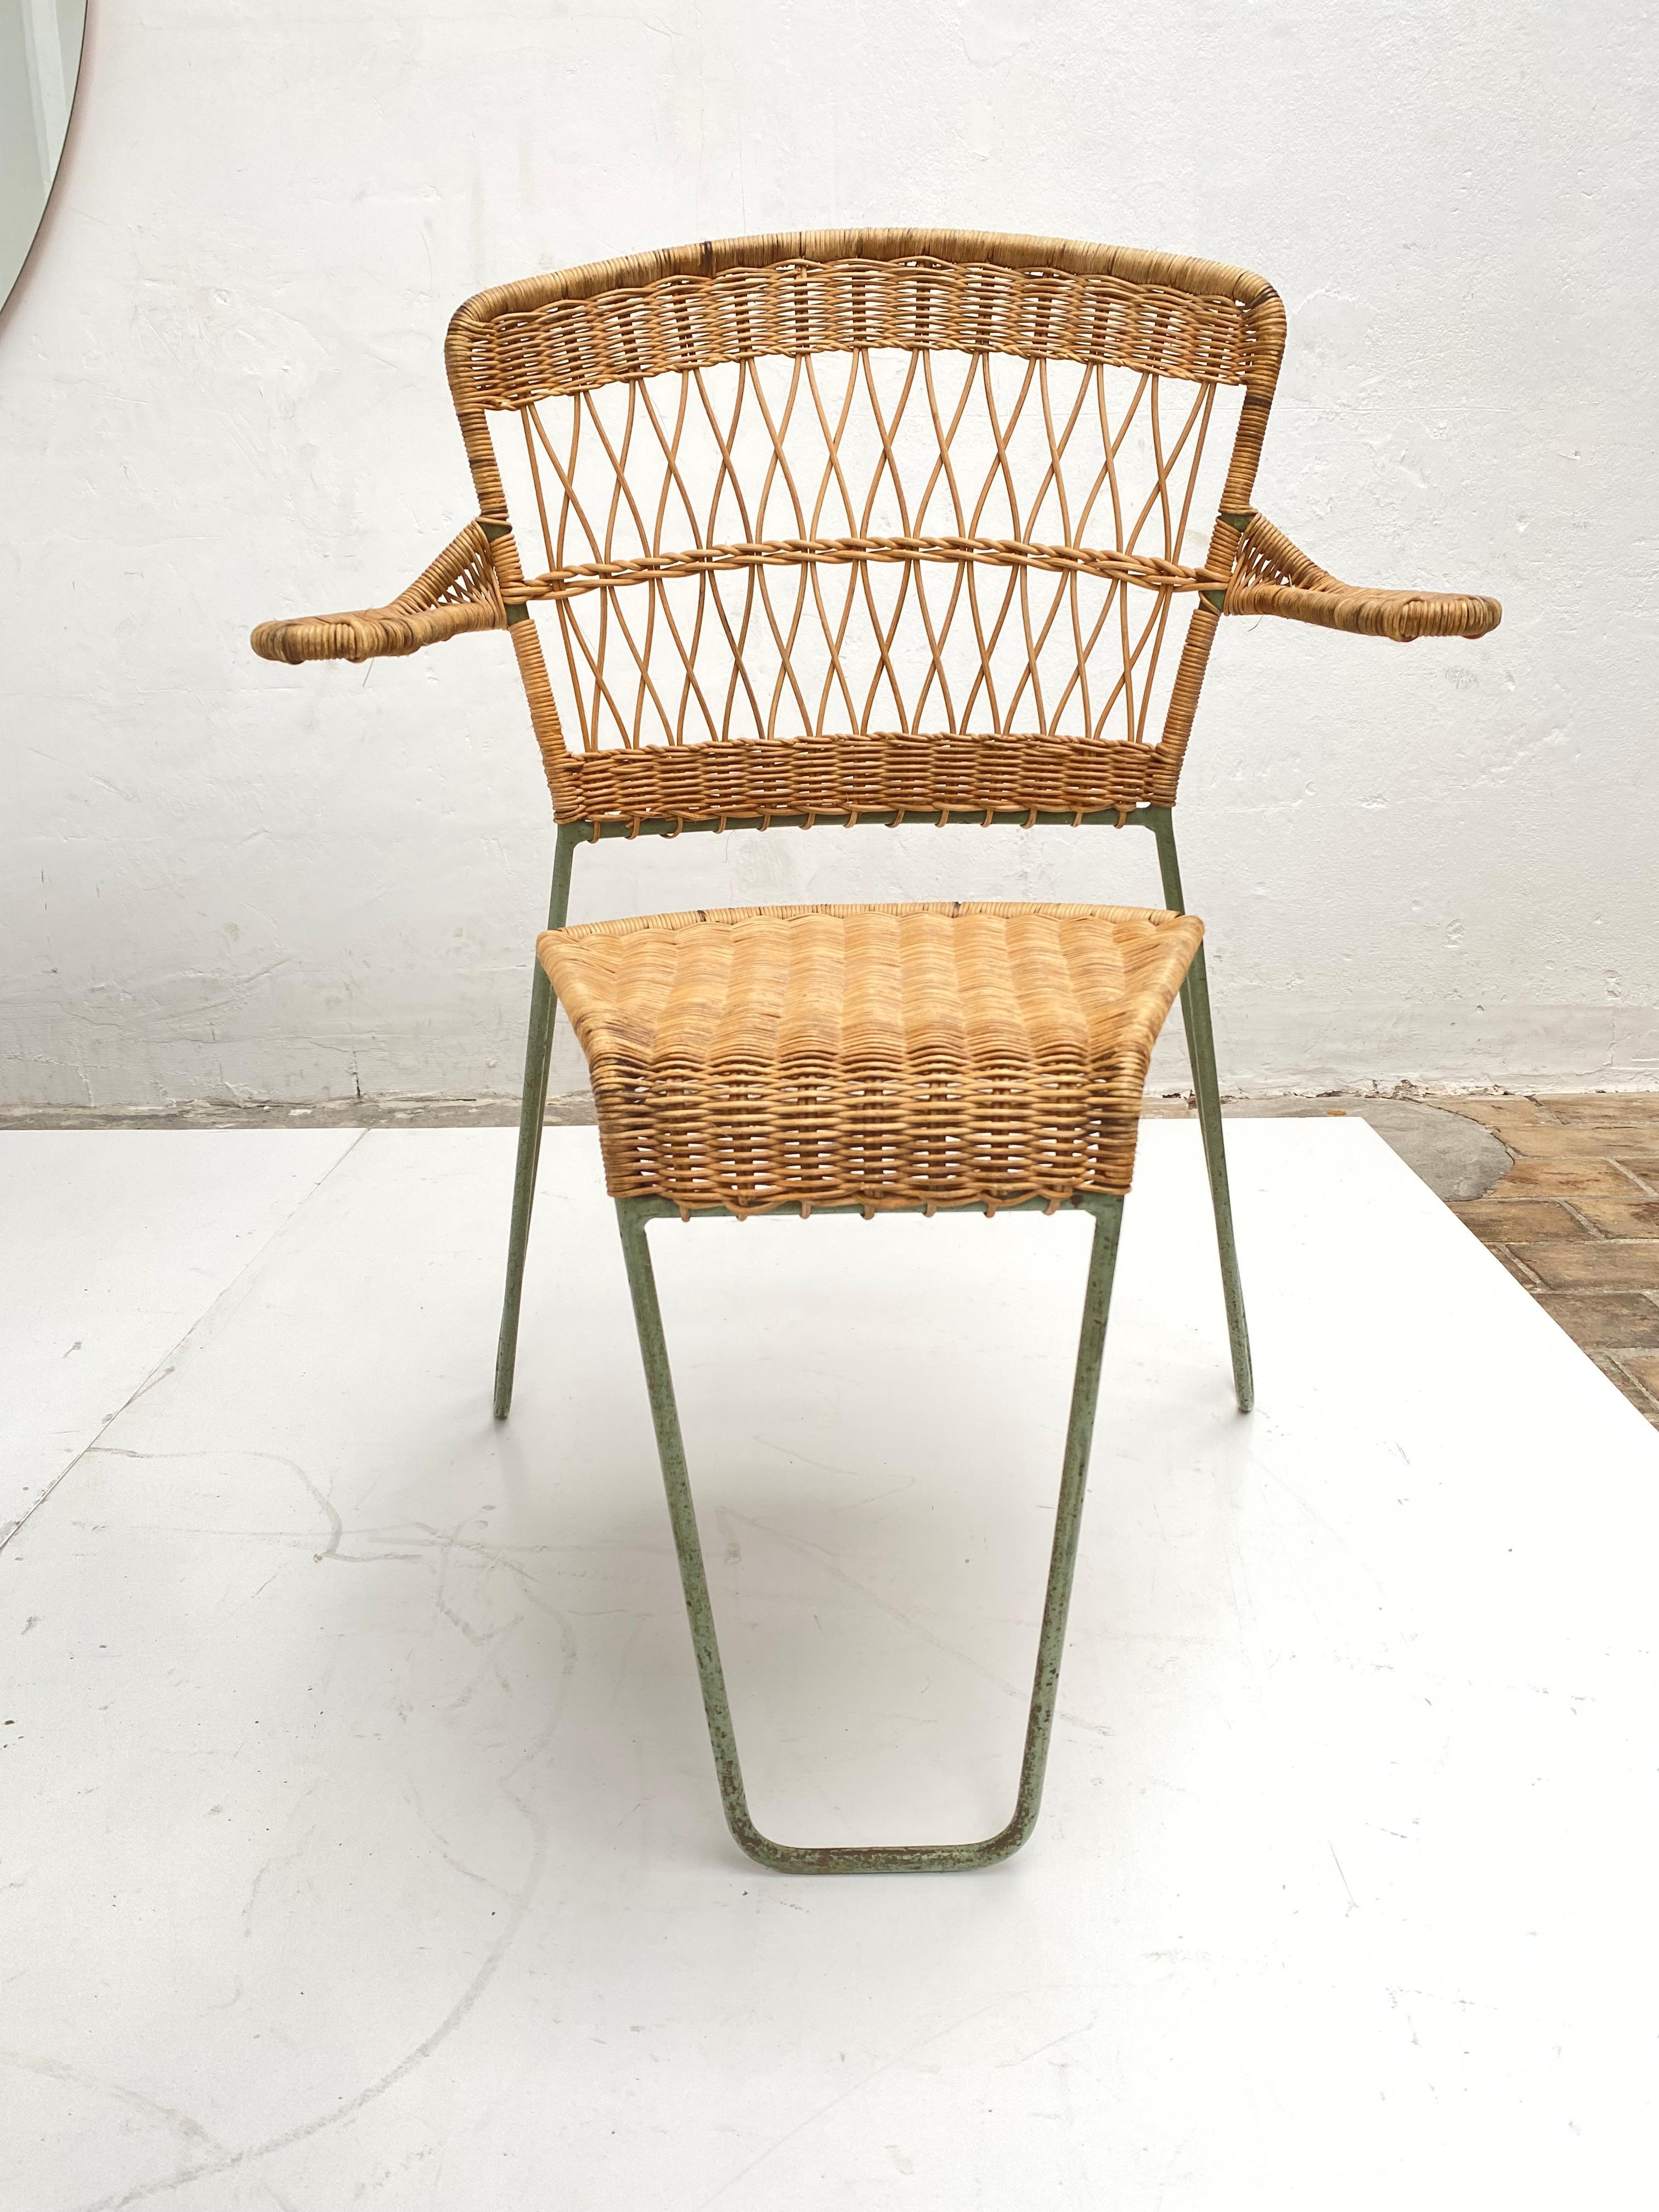 Exquisiter und äußerst seltener Satz von drei 'oro' Esszimmerstühlen, die der Bildhauer und Designer Raoul Guys 1951 für 'Airborne', Frankreich, entworfen hat. 

Diese Stühle wurden von Air France unter der Leitung des französischen